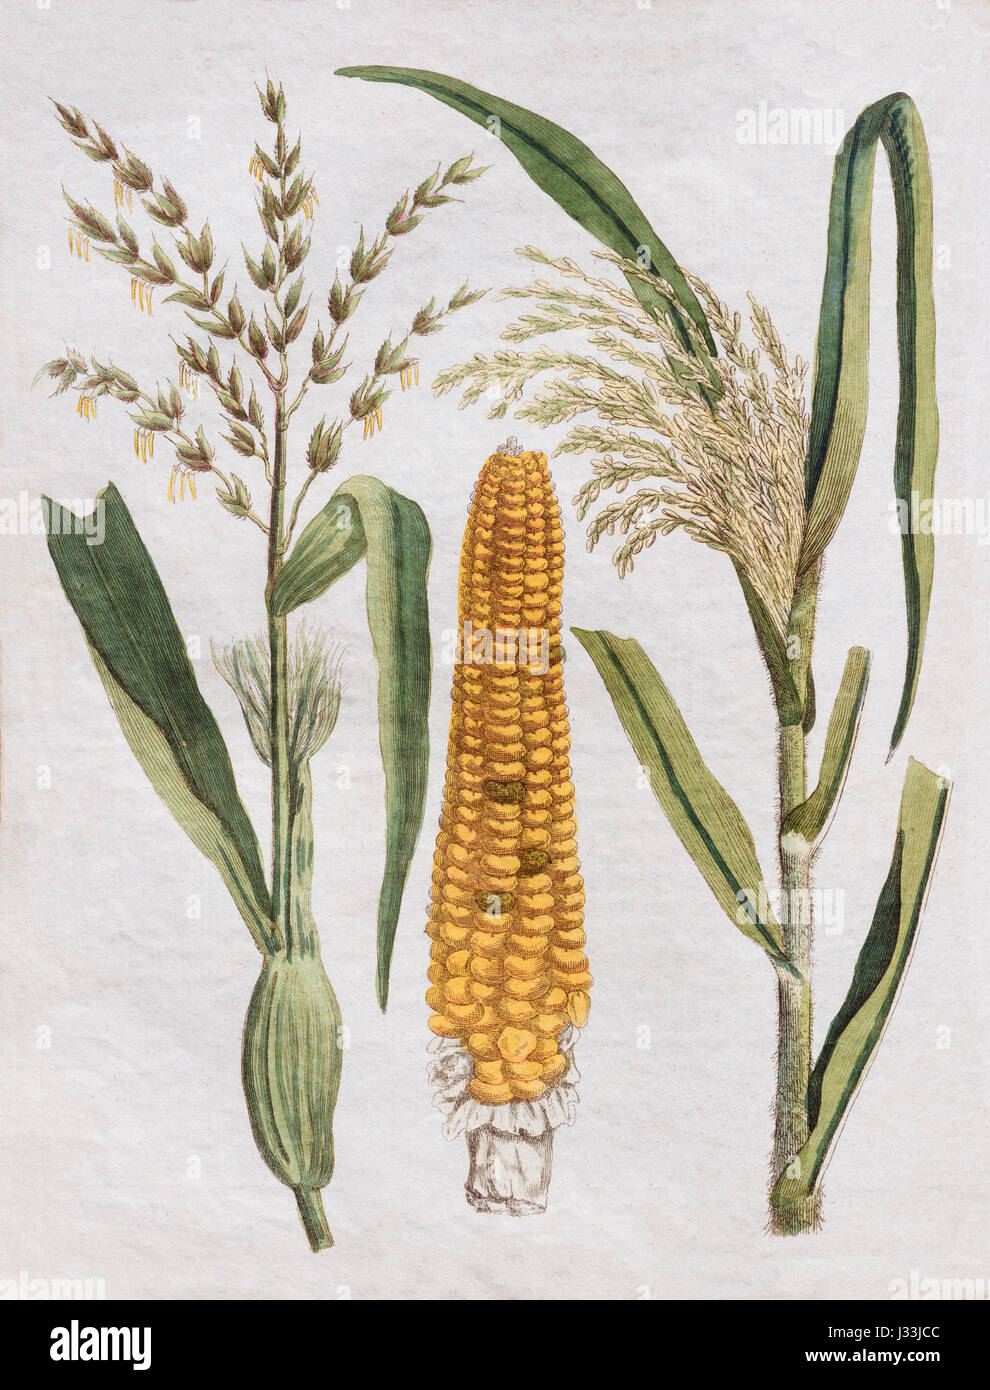 Le maïs (Zea mays) et d'épis de maïs, coloriée à la gravure sur cuivre, de Friedrich Justin Bertuch livre d'images pour enfants Banque D'Images